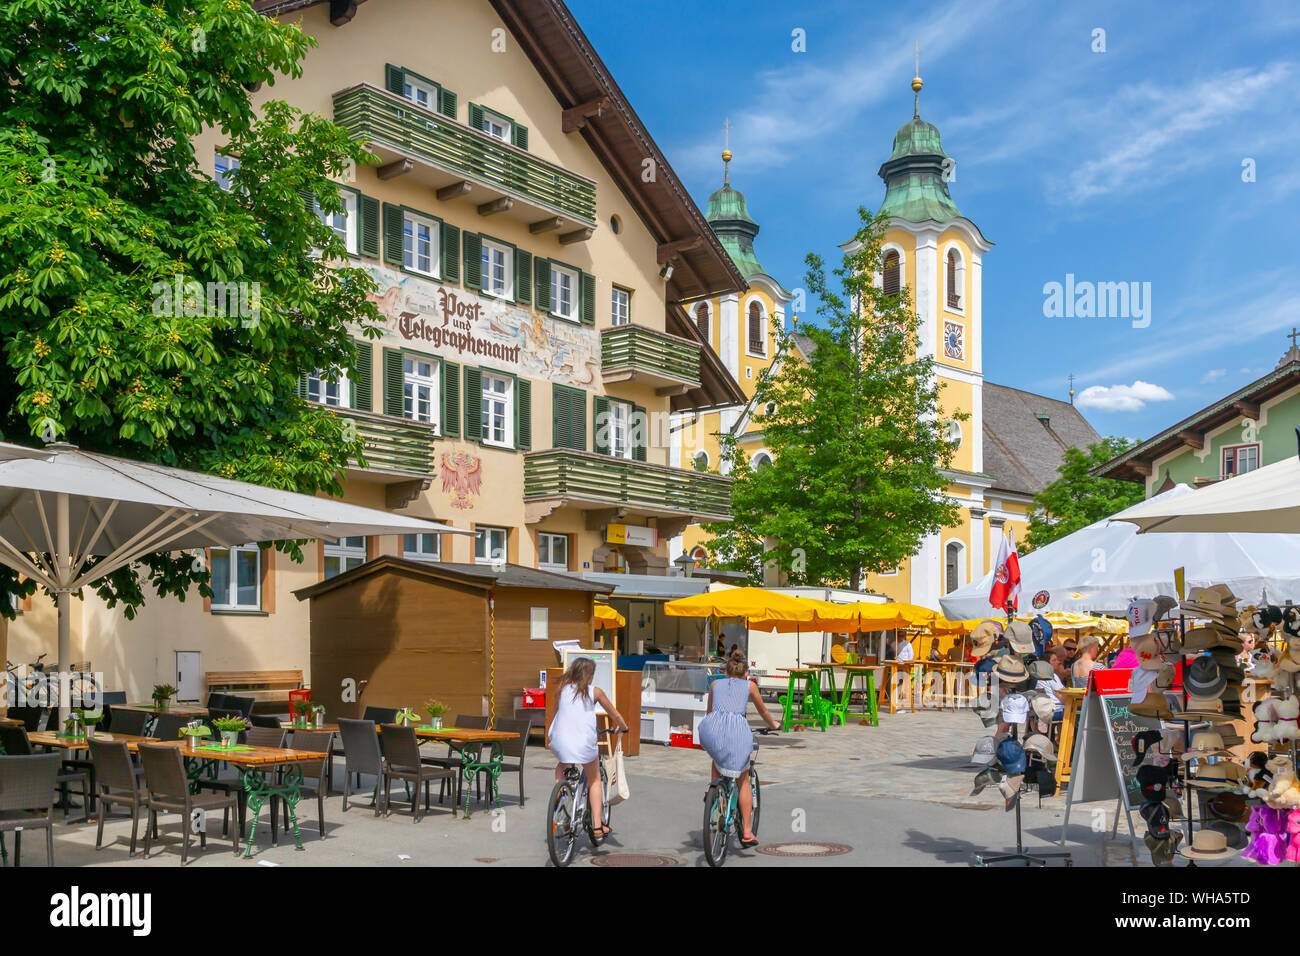 Vista della Chiesa (Barocke Pfarrkirche) e il mercato di San Johann, Alpi austriache, Tirolo, Austria, Europa Foto Stock